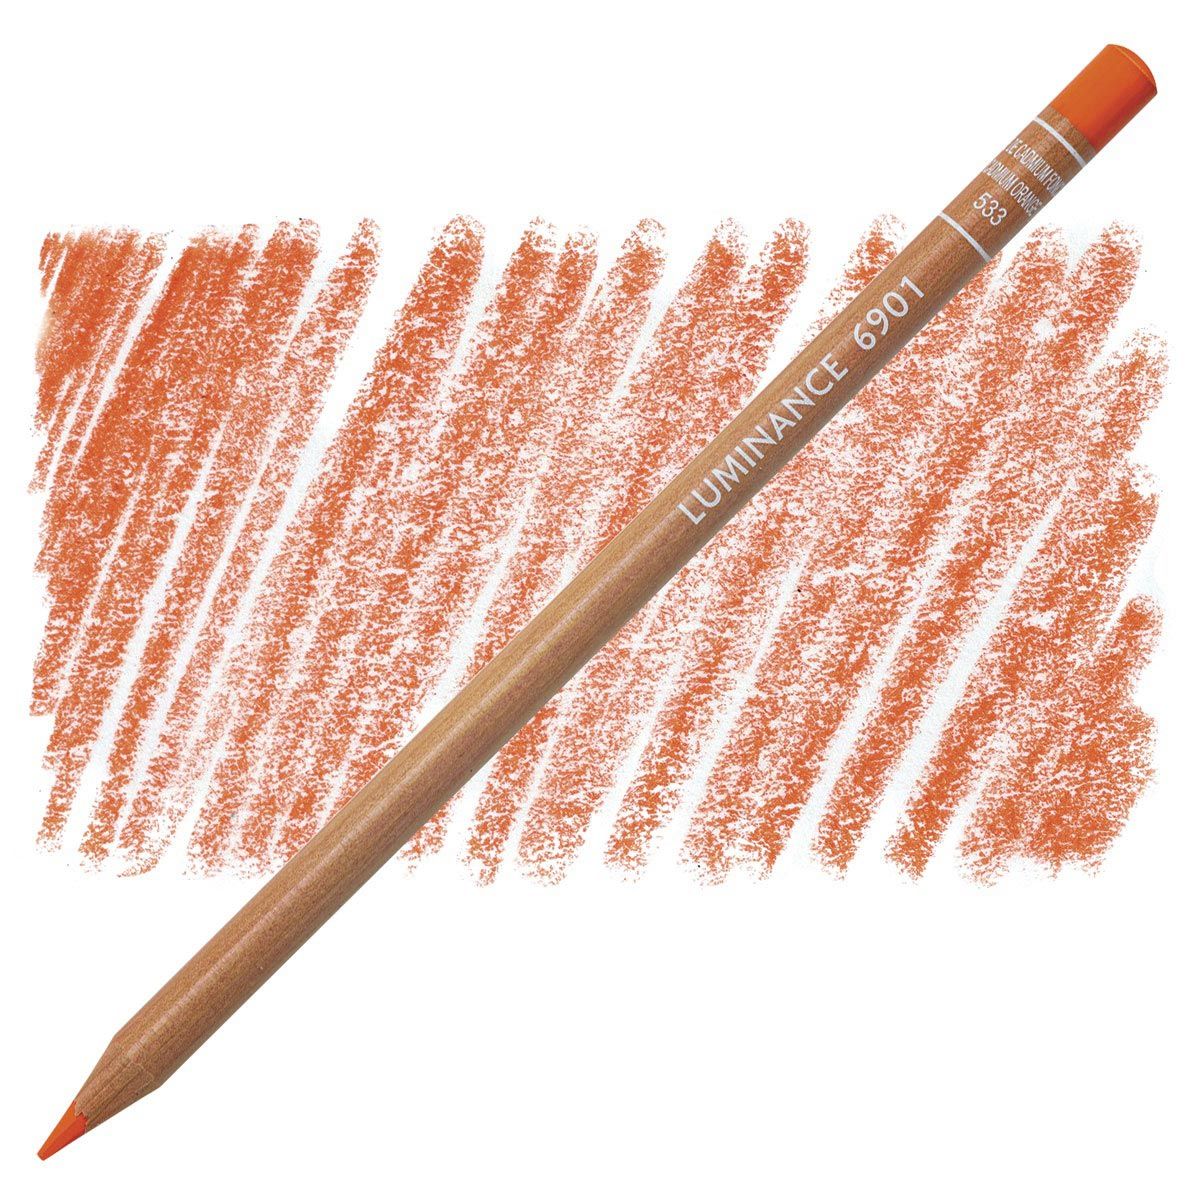 Caran d'Ache Luminance 6901 Pencil - 533 Dark Cadmium Orange